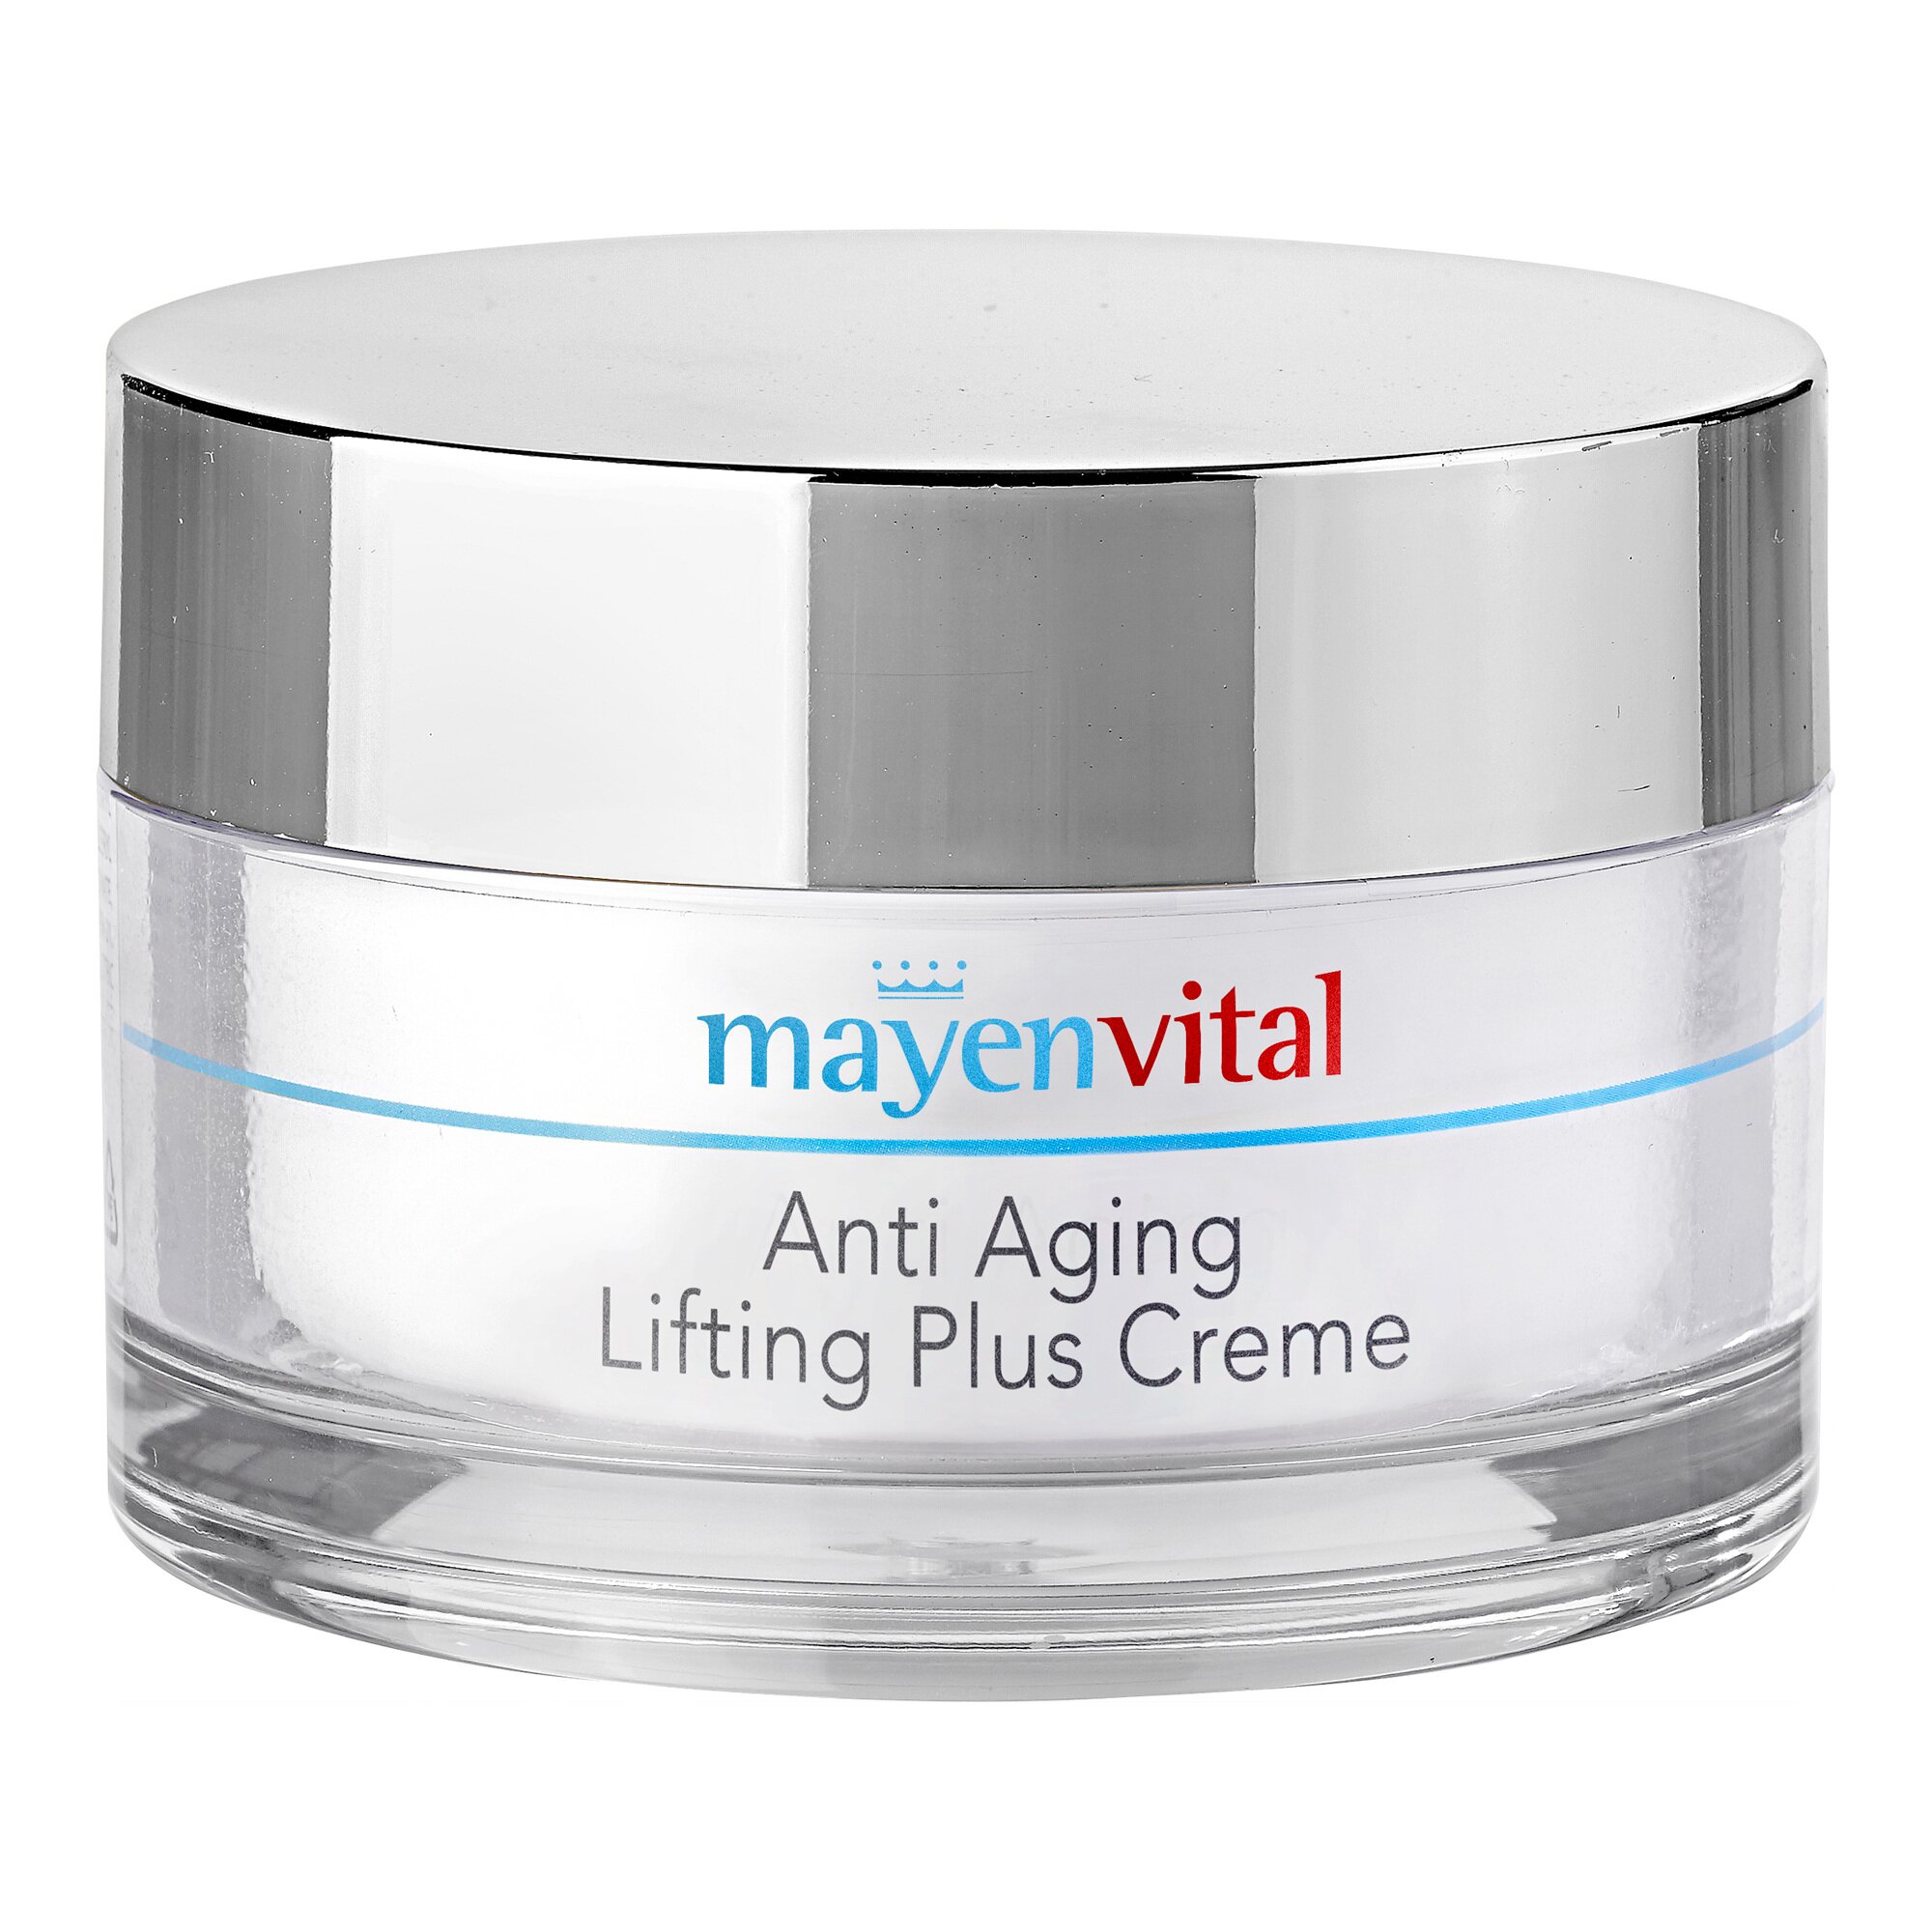 Image of Anti Aging Lifting Plus Creme, 175 ml